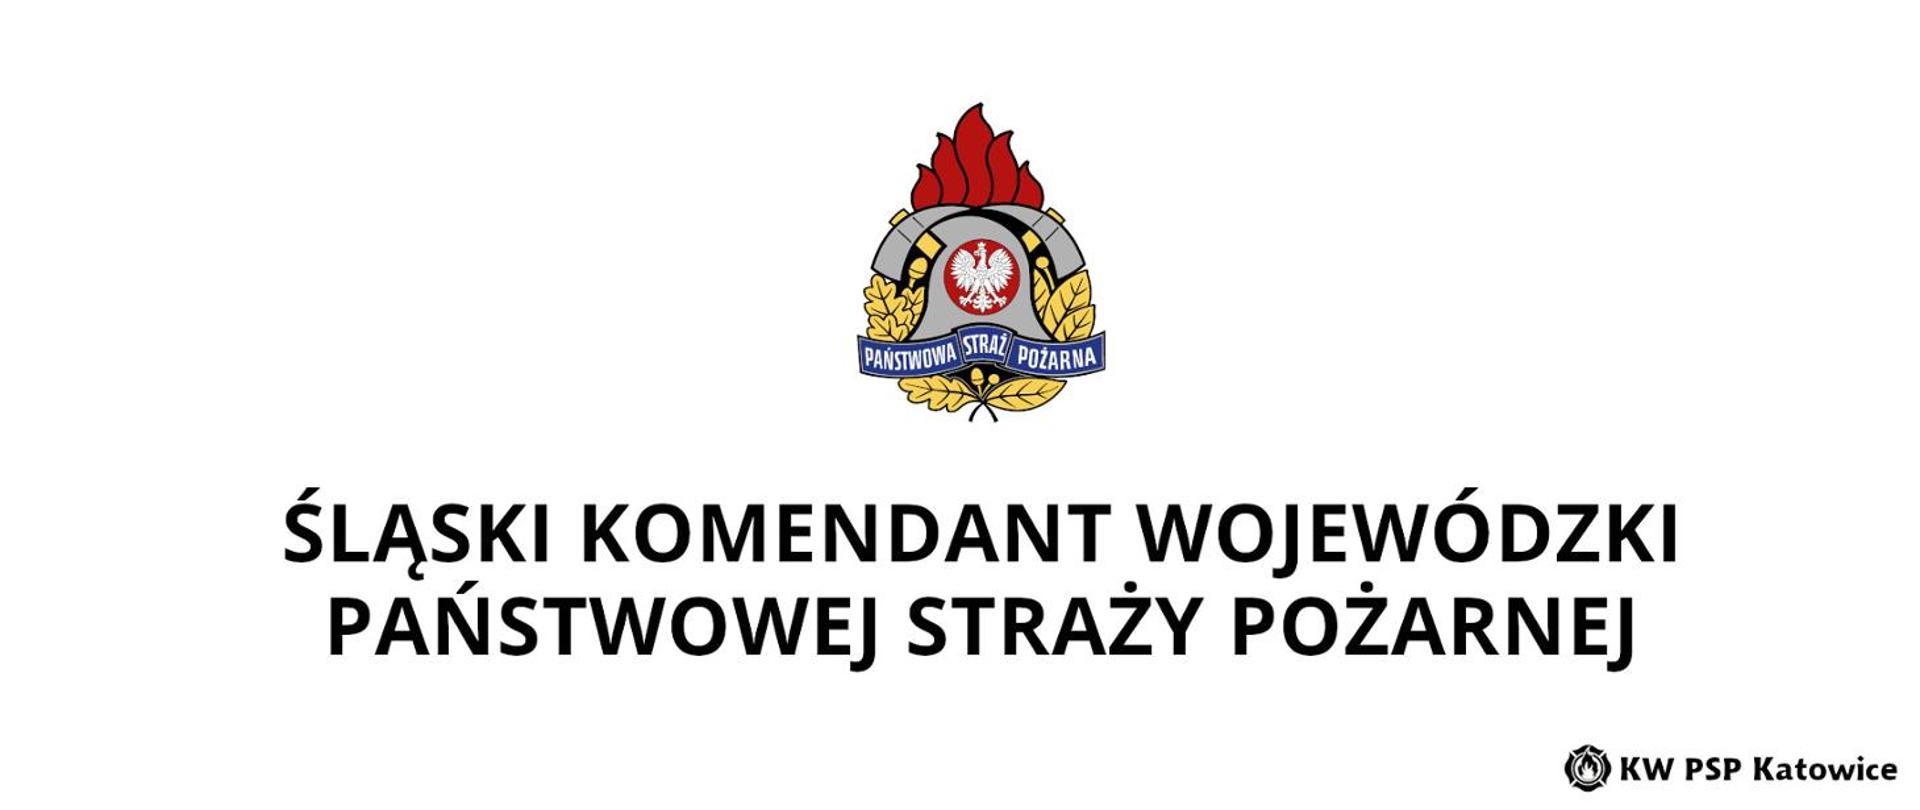 U góry logo PSP oraz napis – Śląski Komendant Wojewódzki PSP